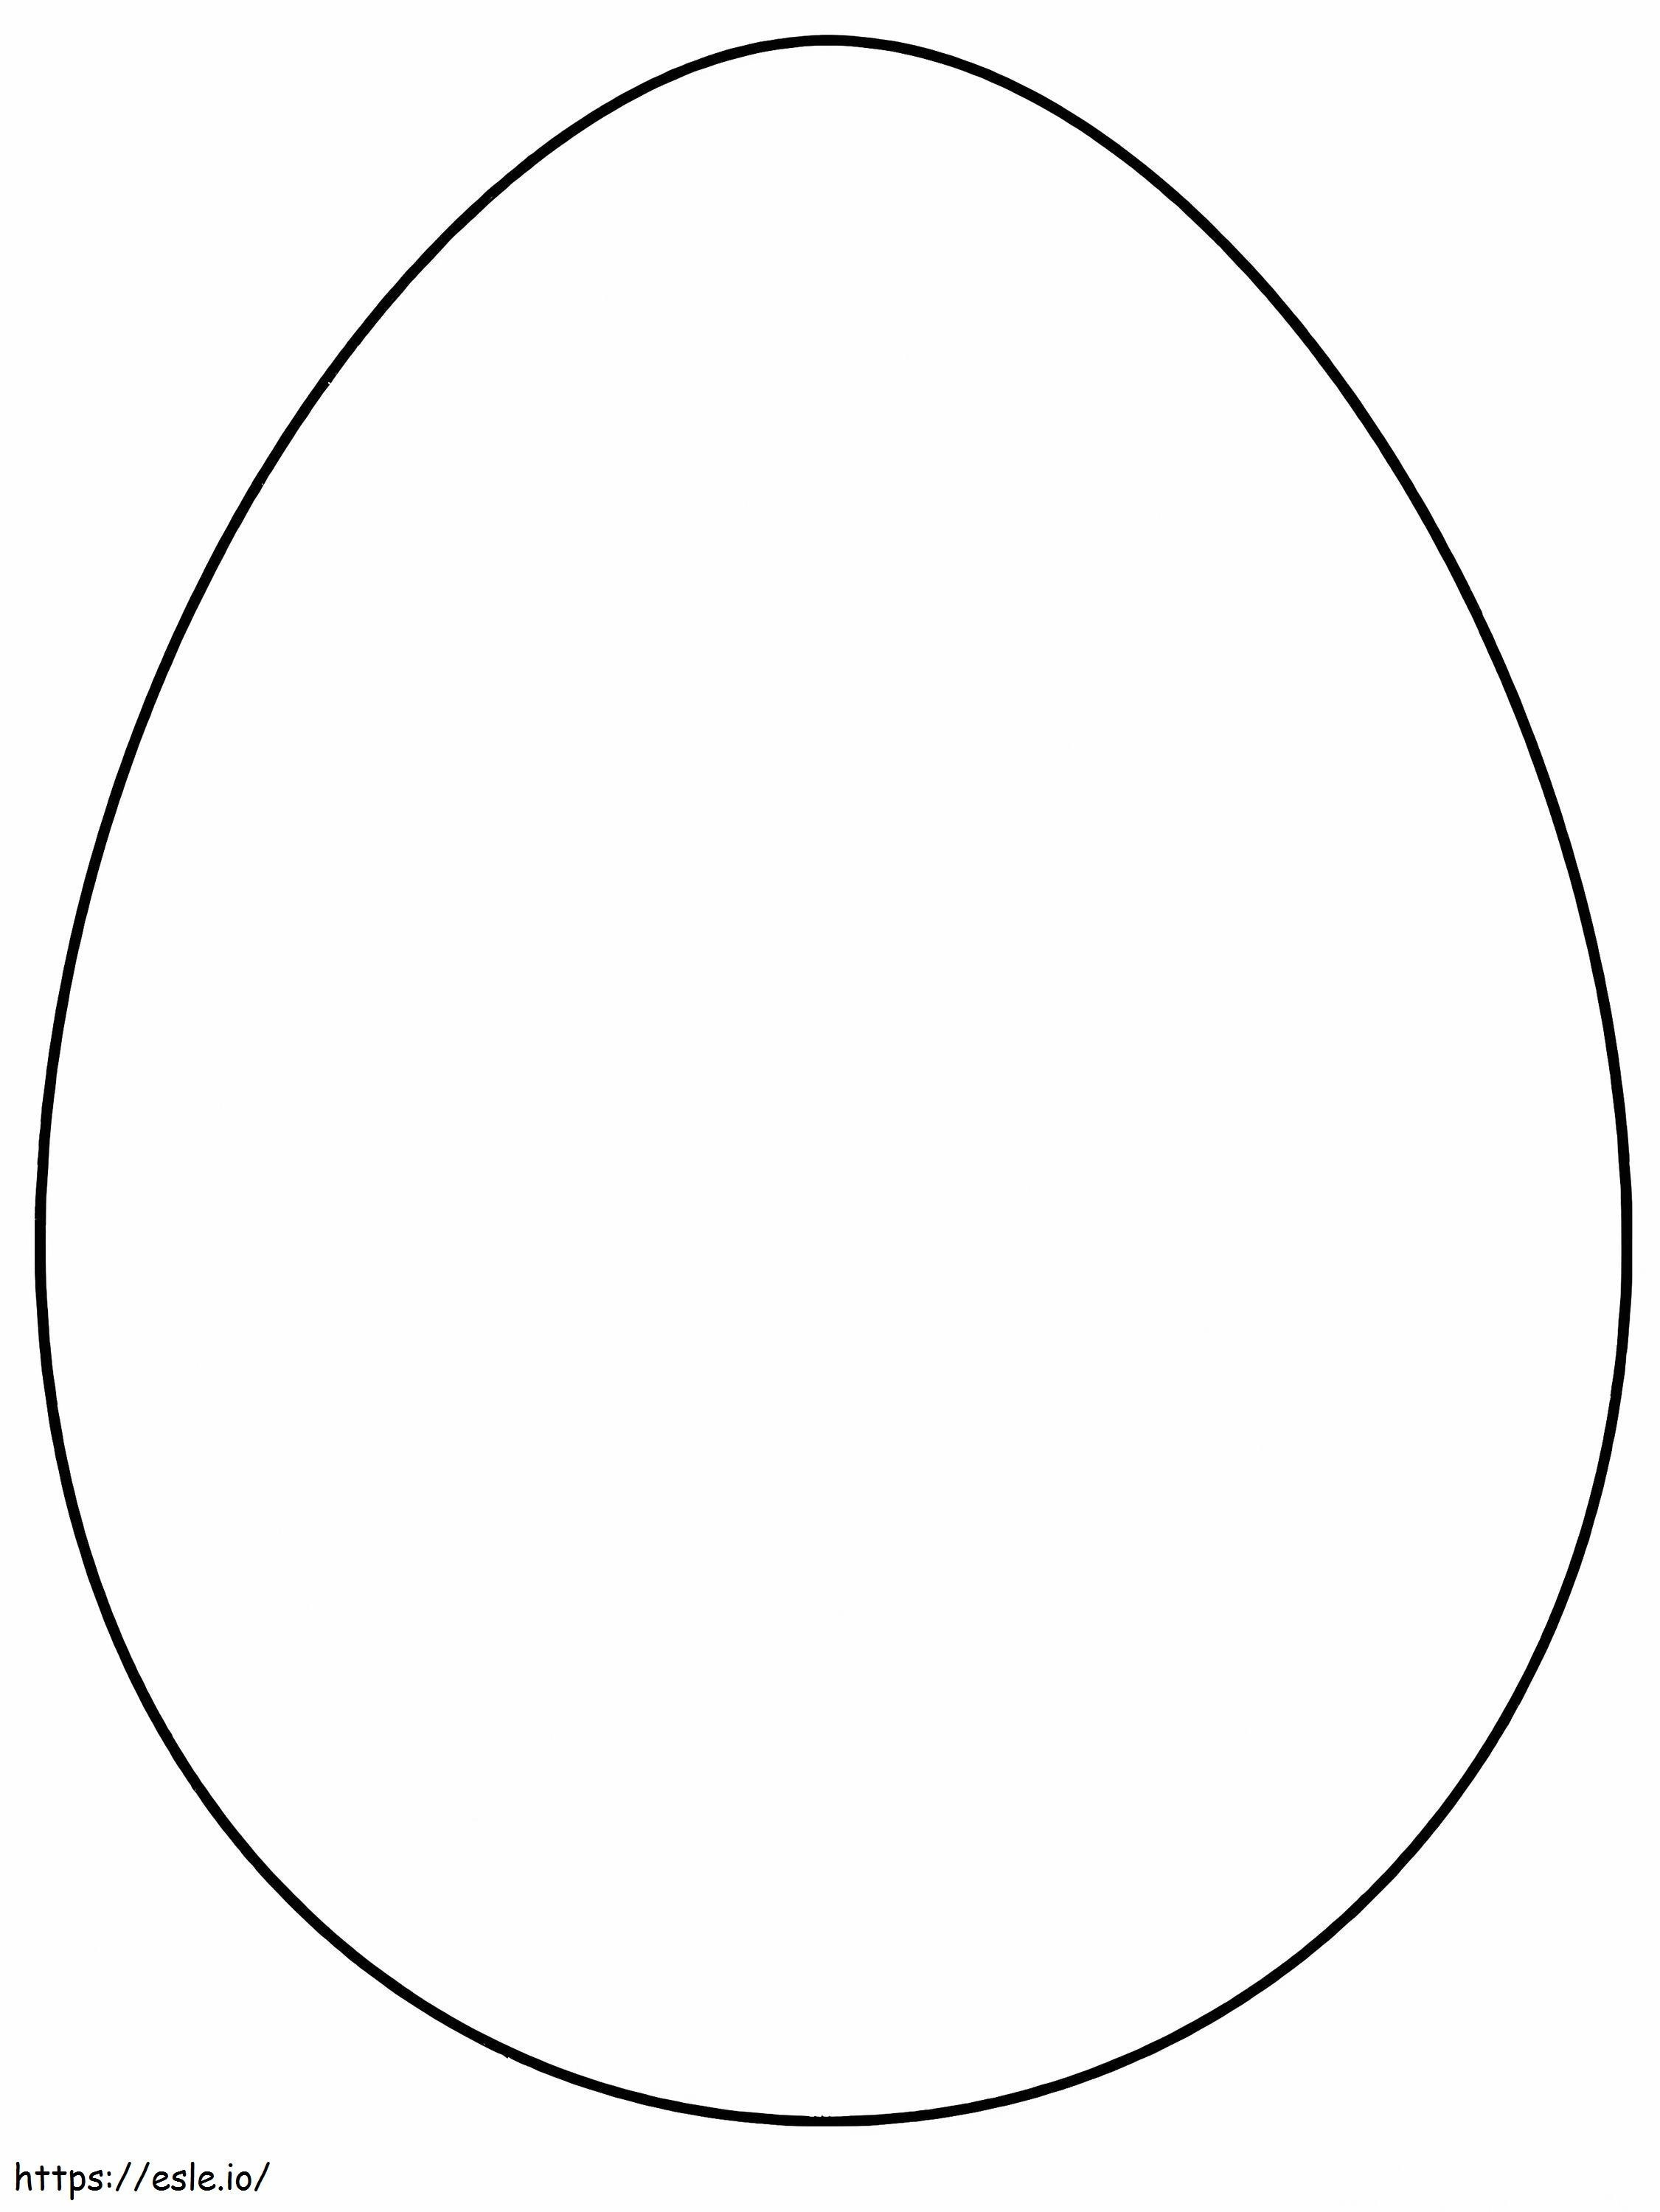 Einfaches Ei ausmalbilder